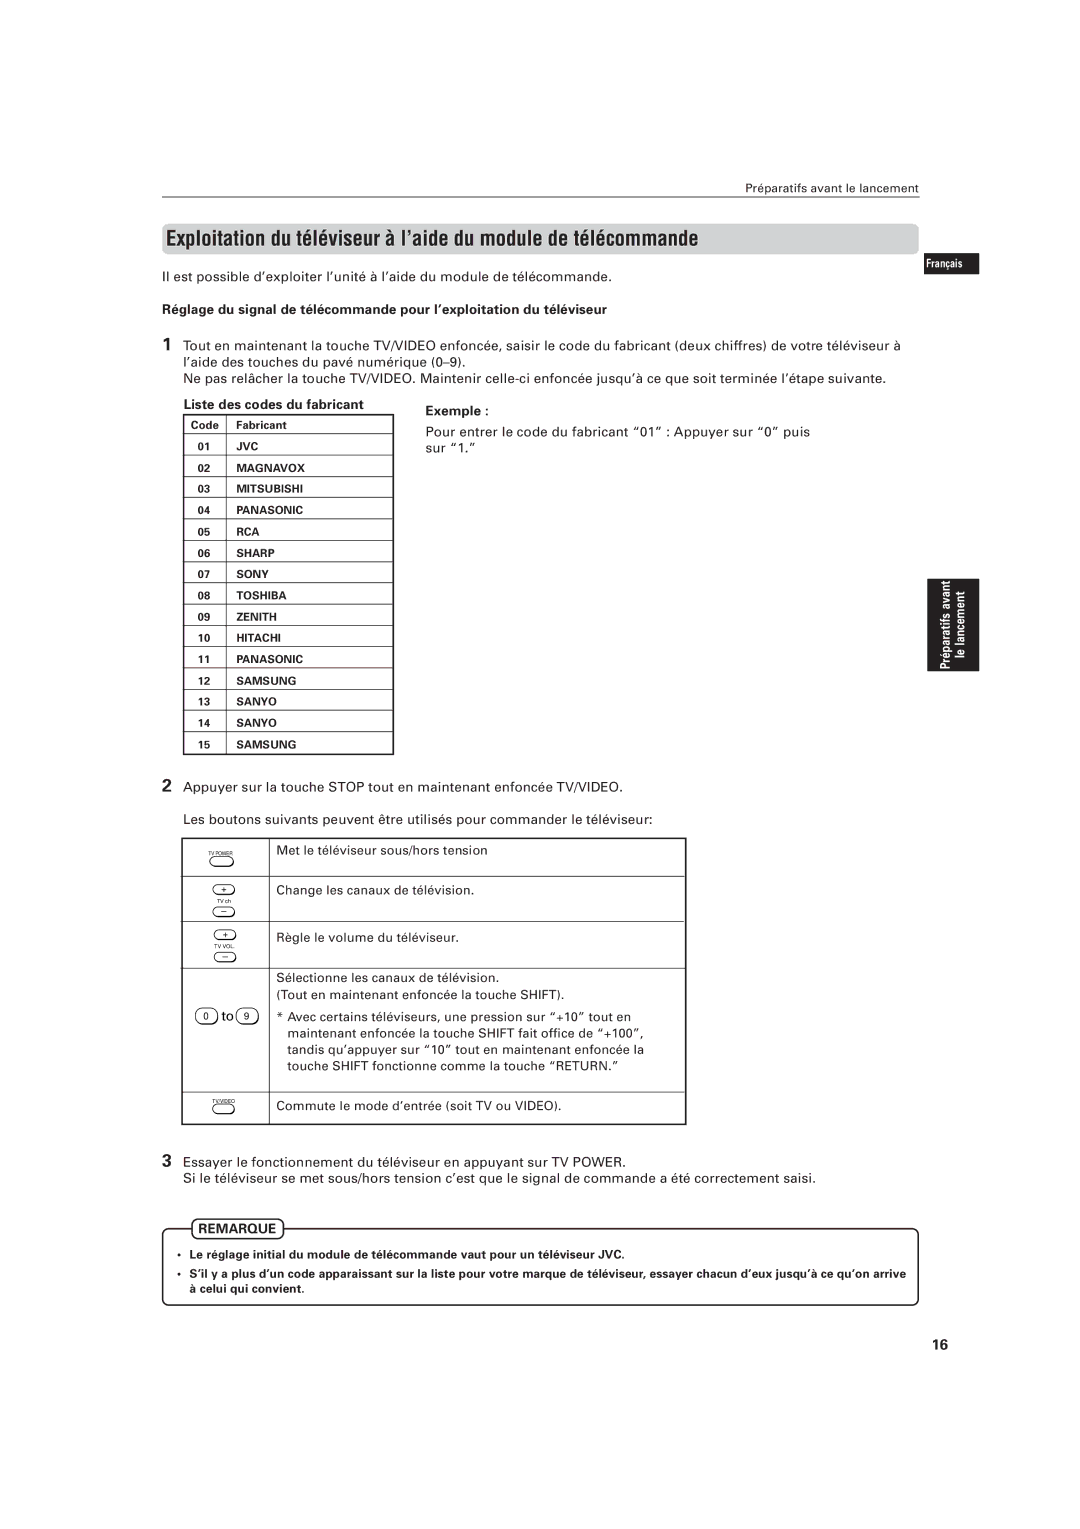 JVC LVT0336-003A manual Liste des codes du fabricant, Exemple, Pour entrer le code du fabricant 01 Appuyer sur 0 puis sur 